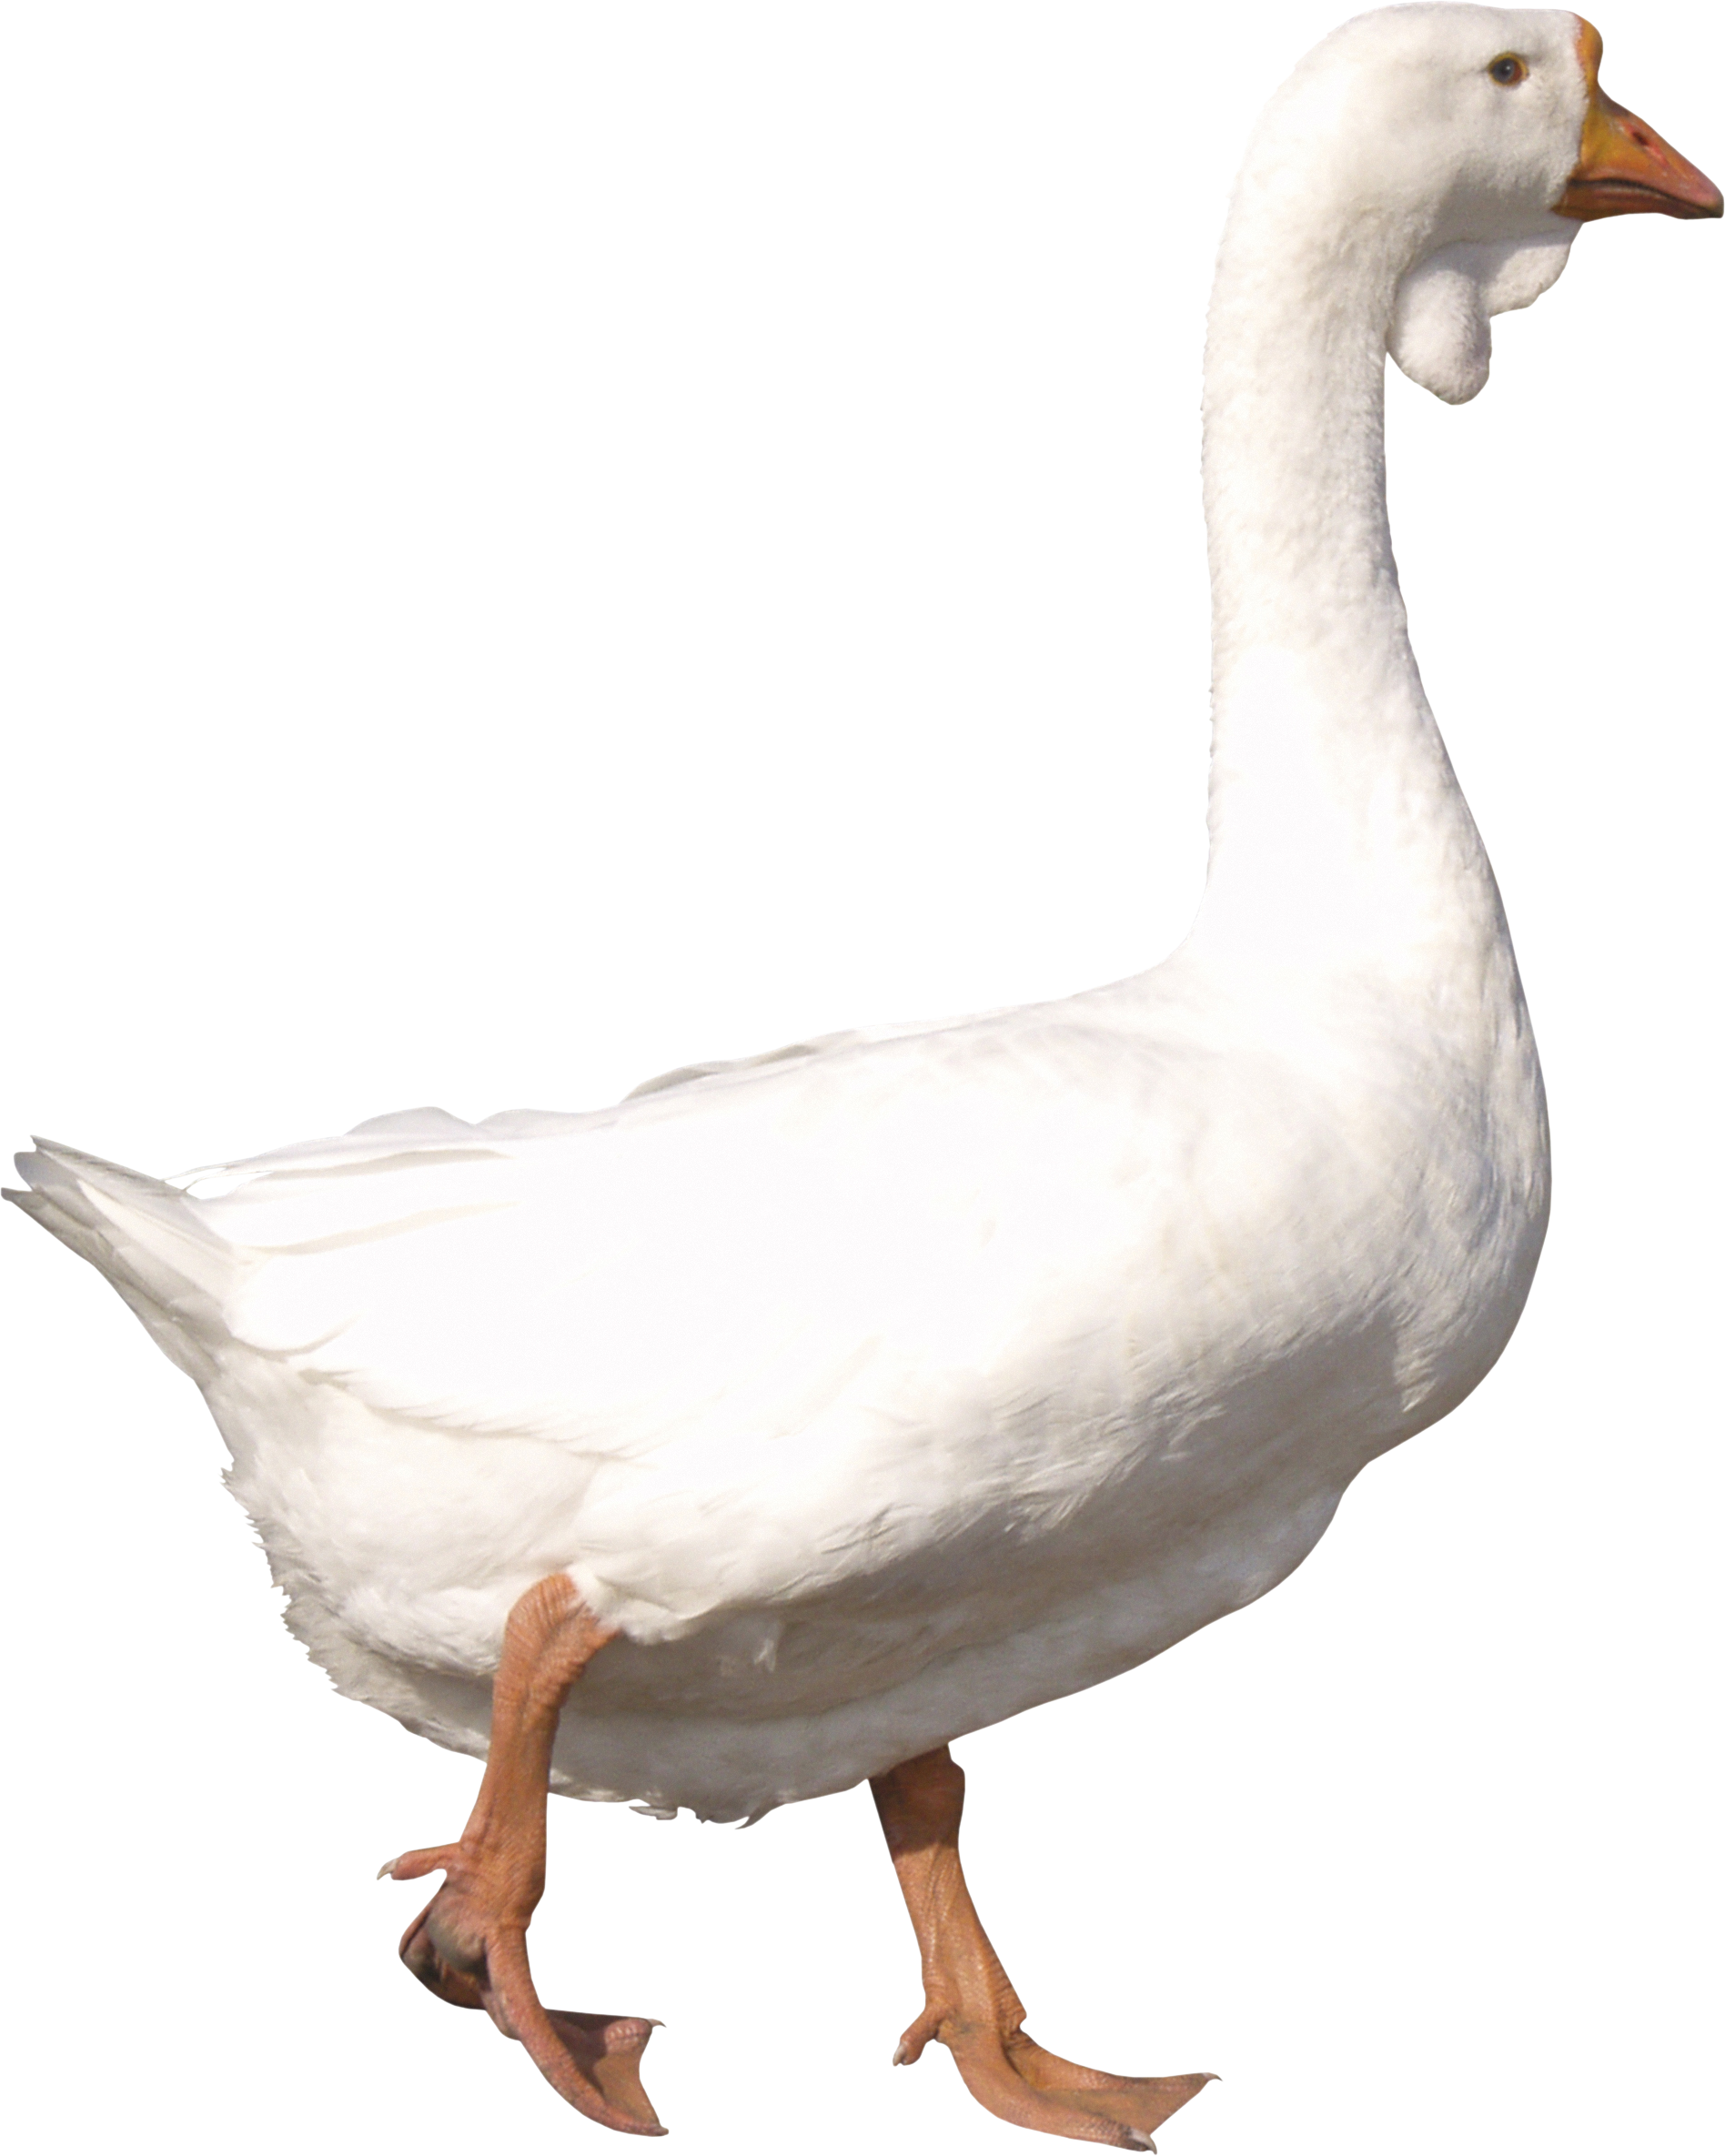 Goose PNG HD